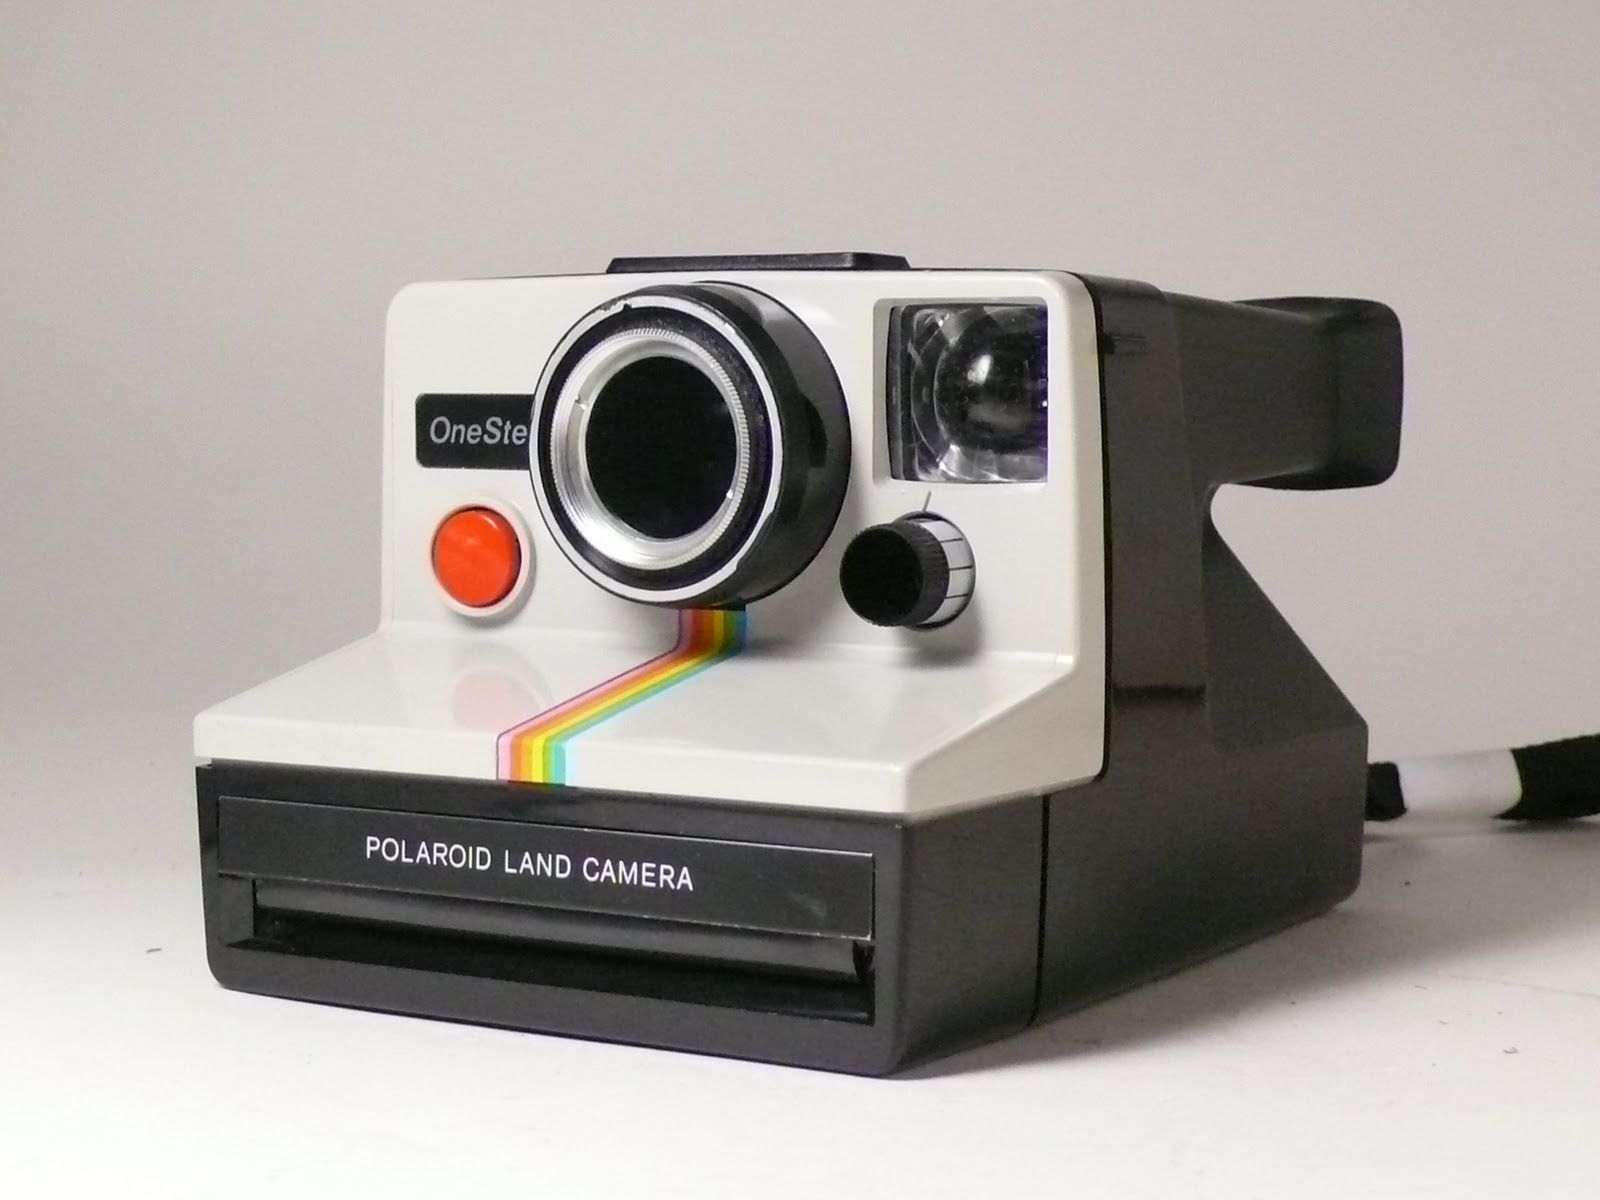 Mendapatkan Hasil Maksimal dari Kamera Polaroid Anda